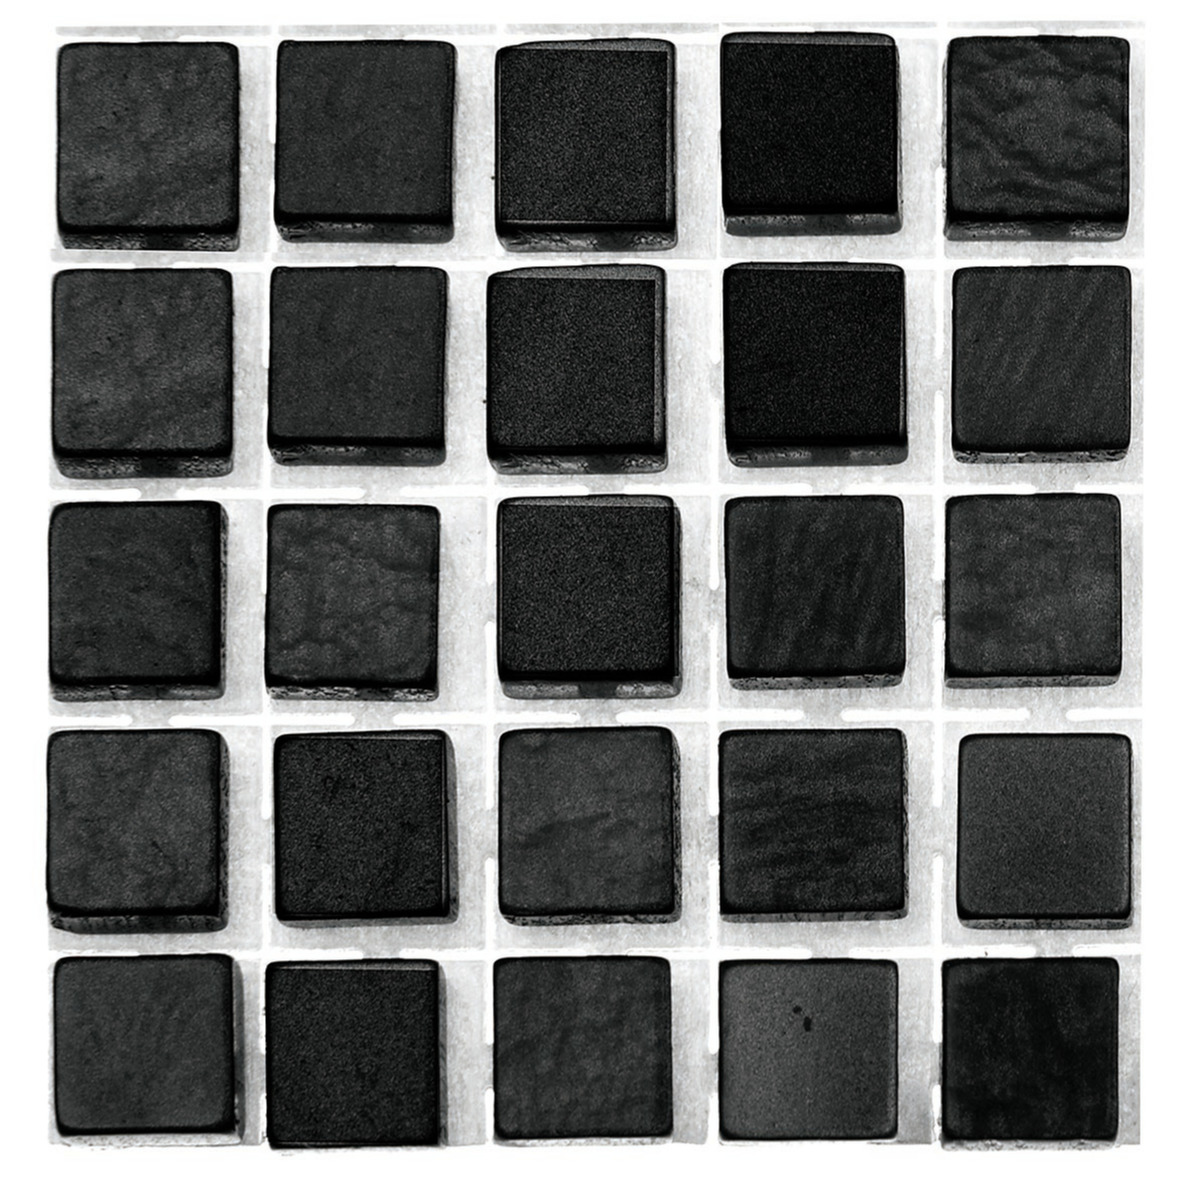 119x stuks mozaieken maken steentjes-tegels kleur zwart 5 x 5 x 2 mm